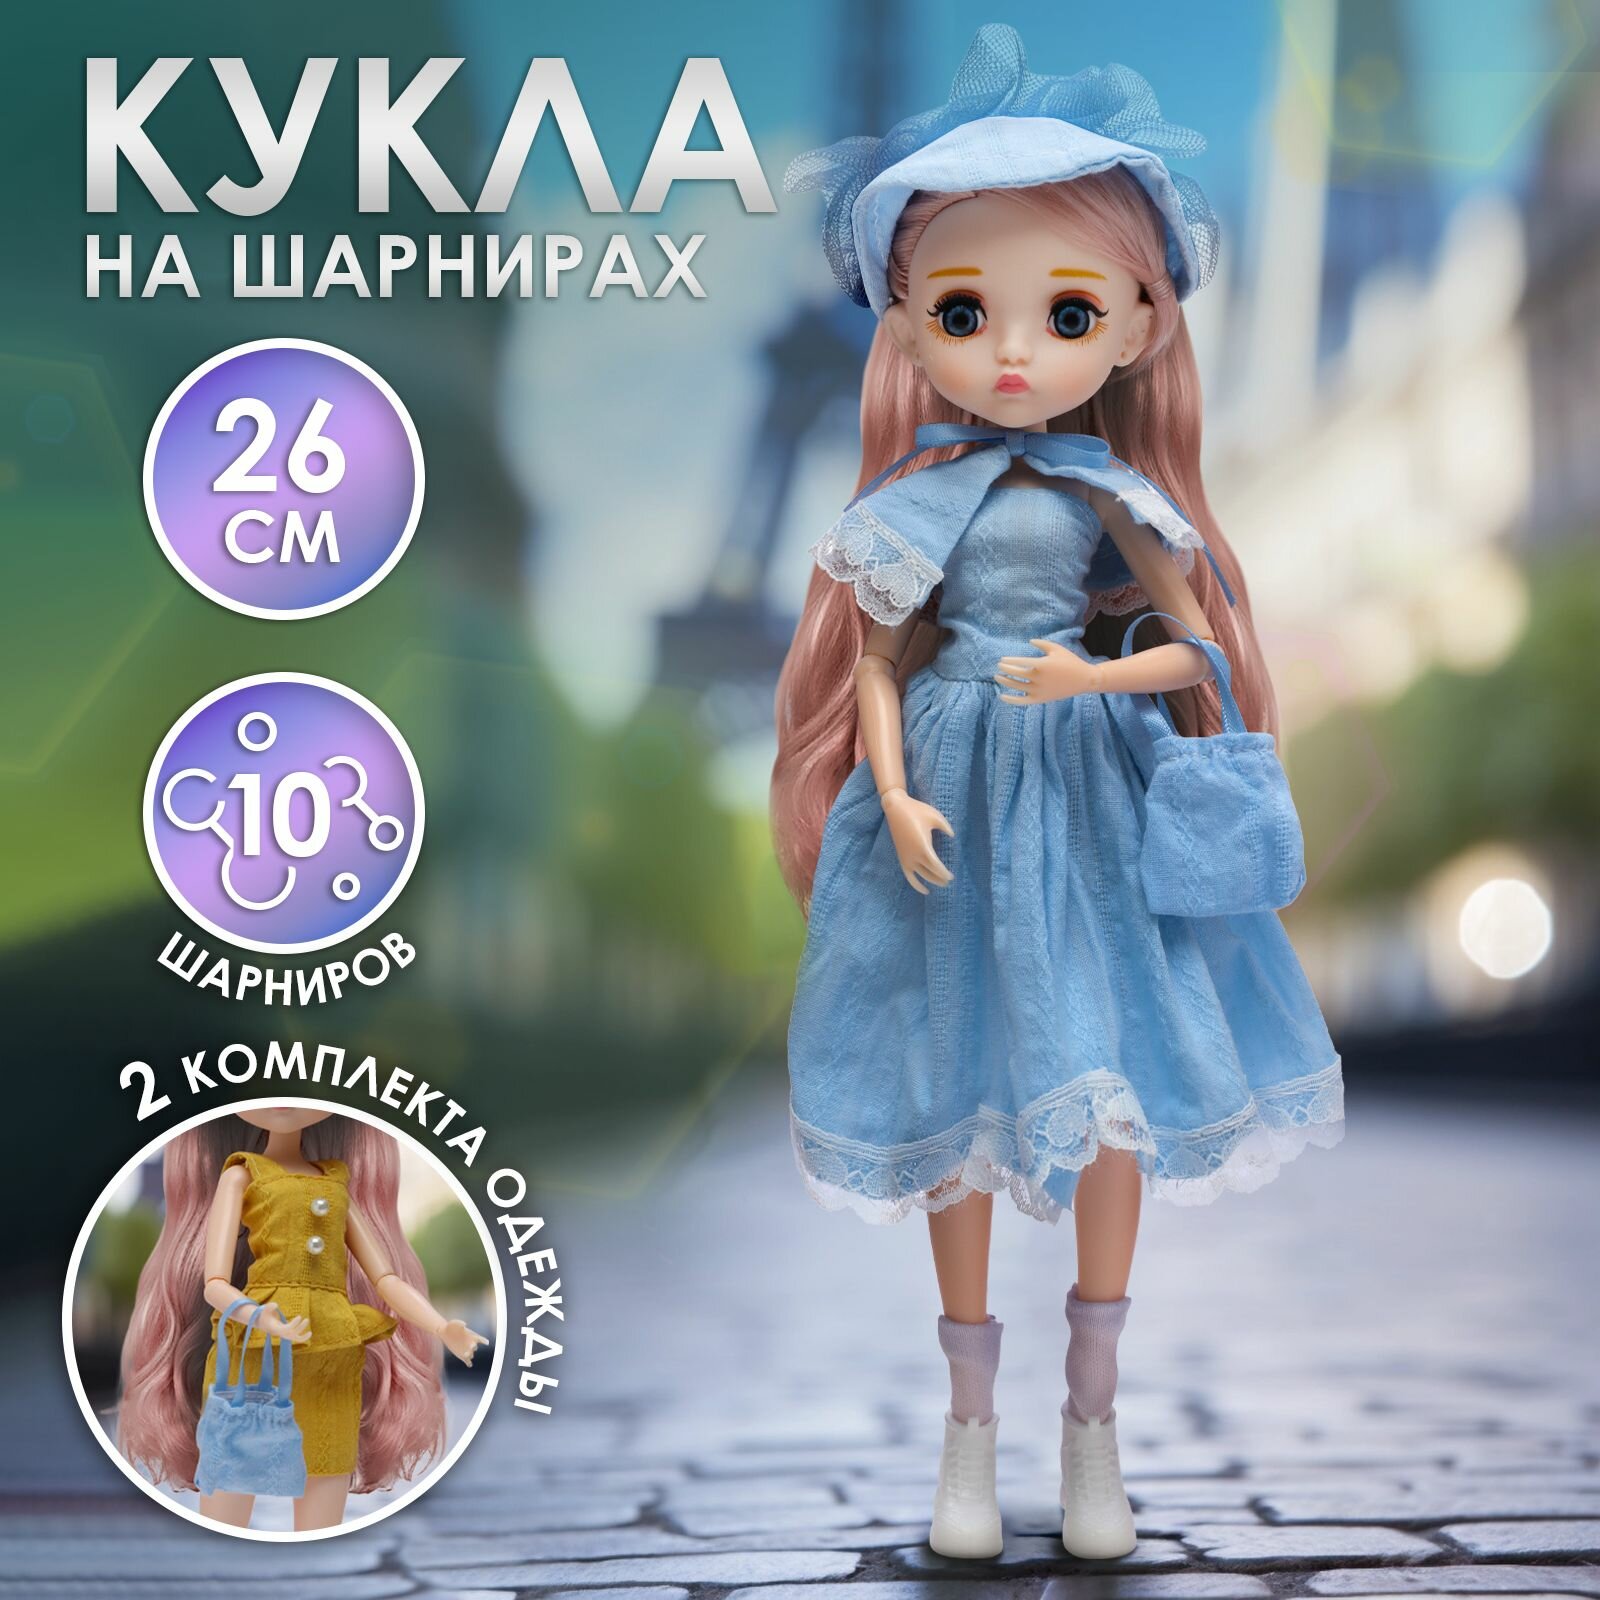 Кукла шарнирная WiMi коллекционная с одеждой и аксессуарами, бжд на шарнирах